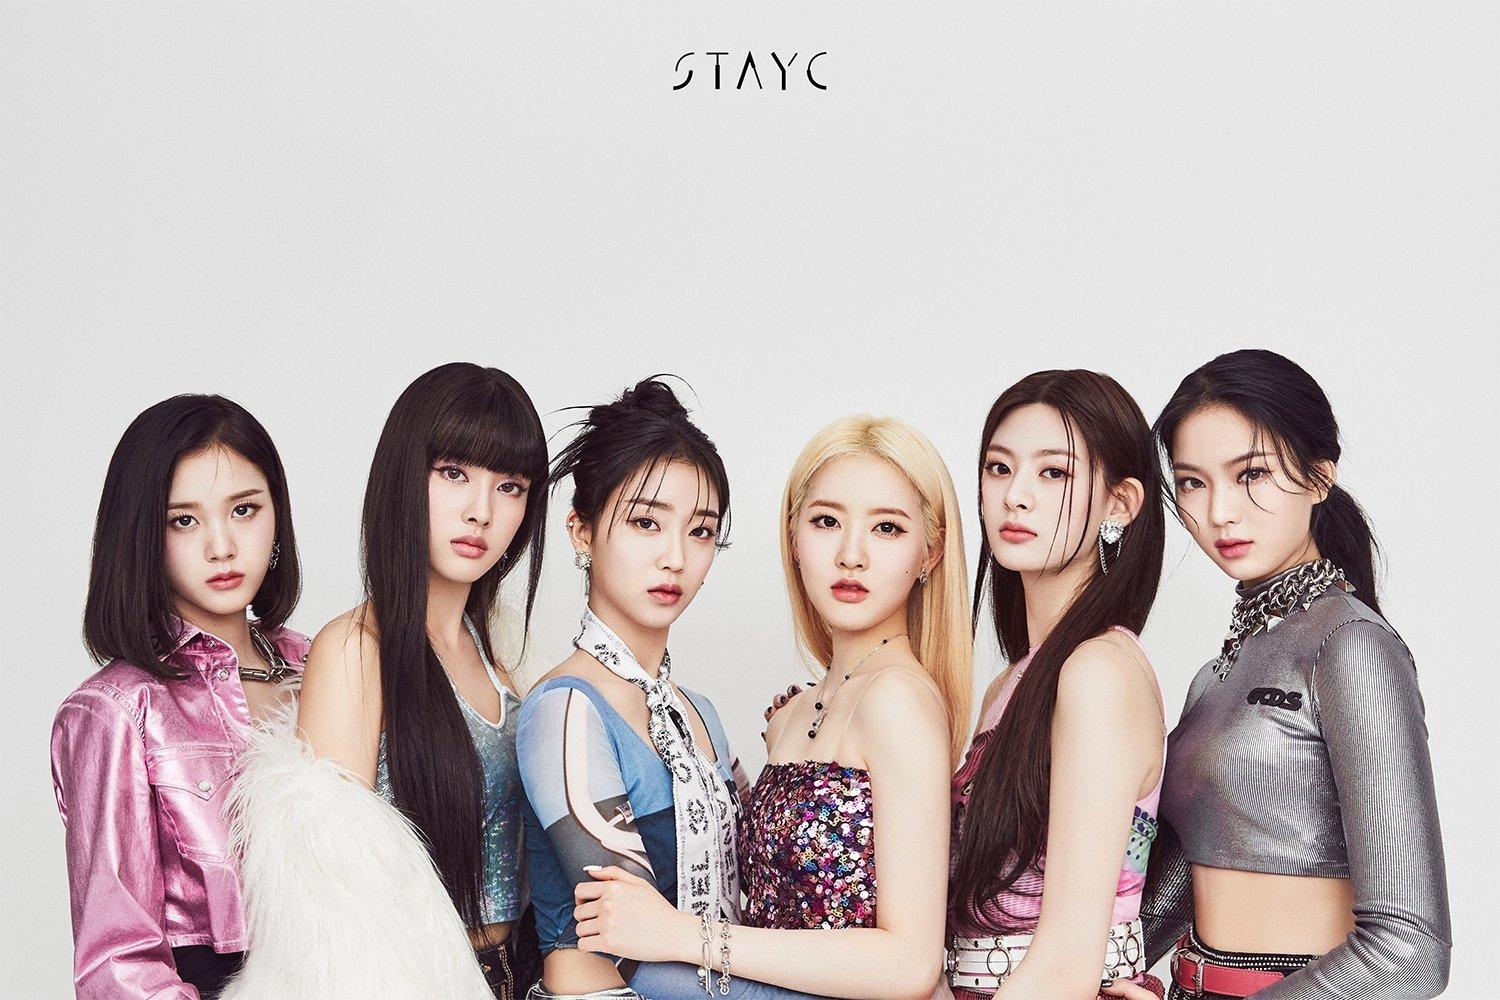 STAYC đã sẵn sàng với “RUN2U” trong MV teaser mới ra mắt - BlogAnChoi